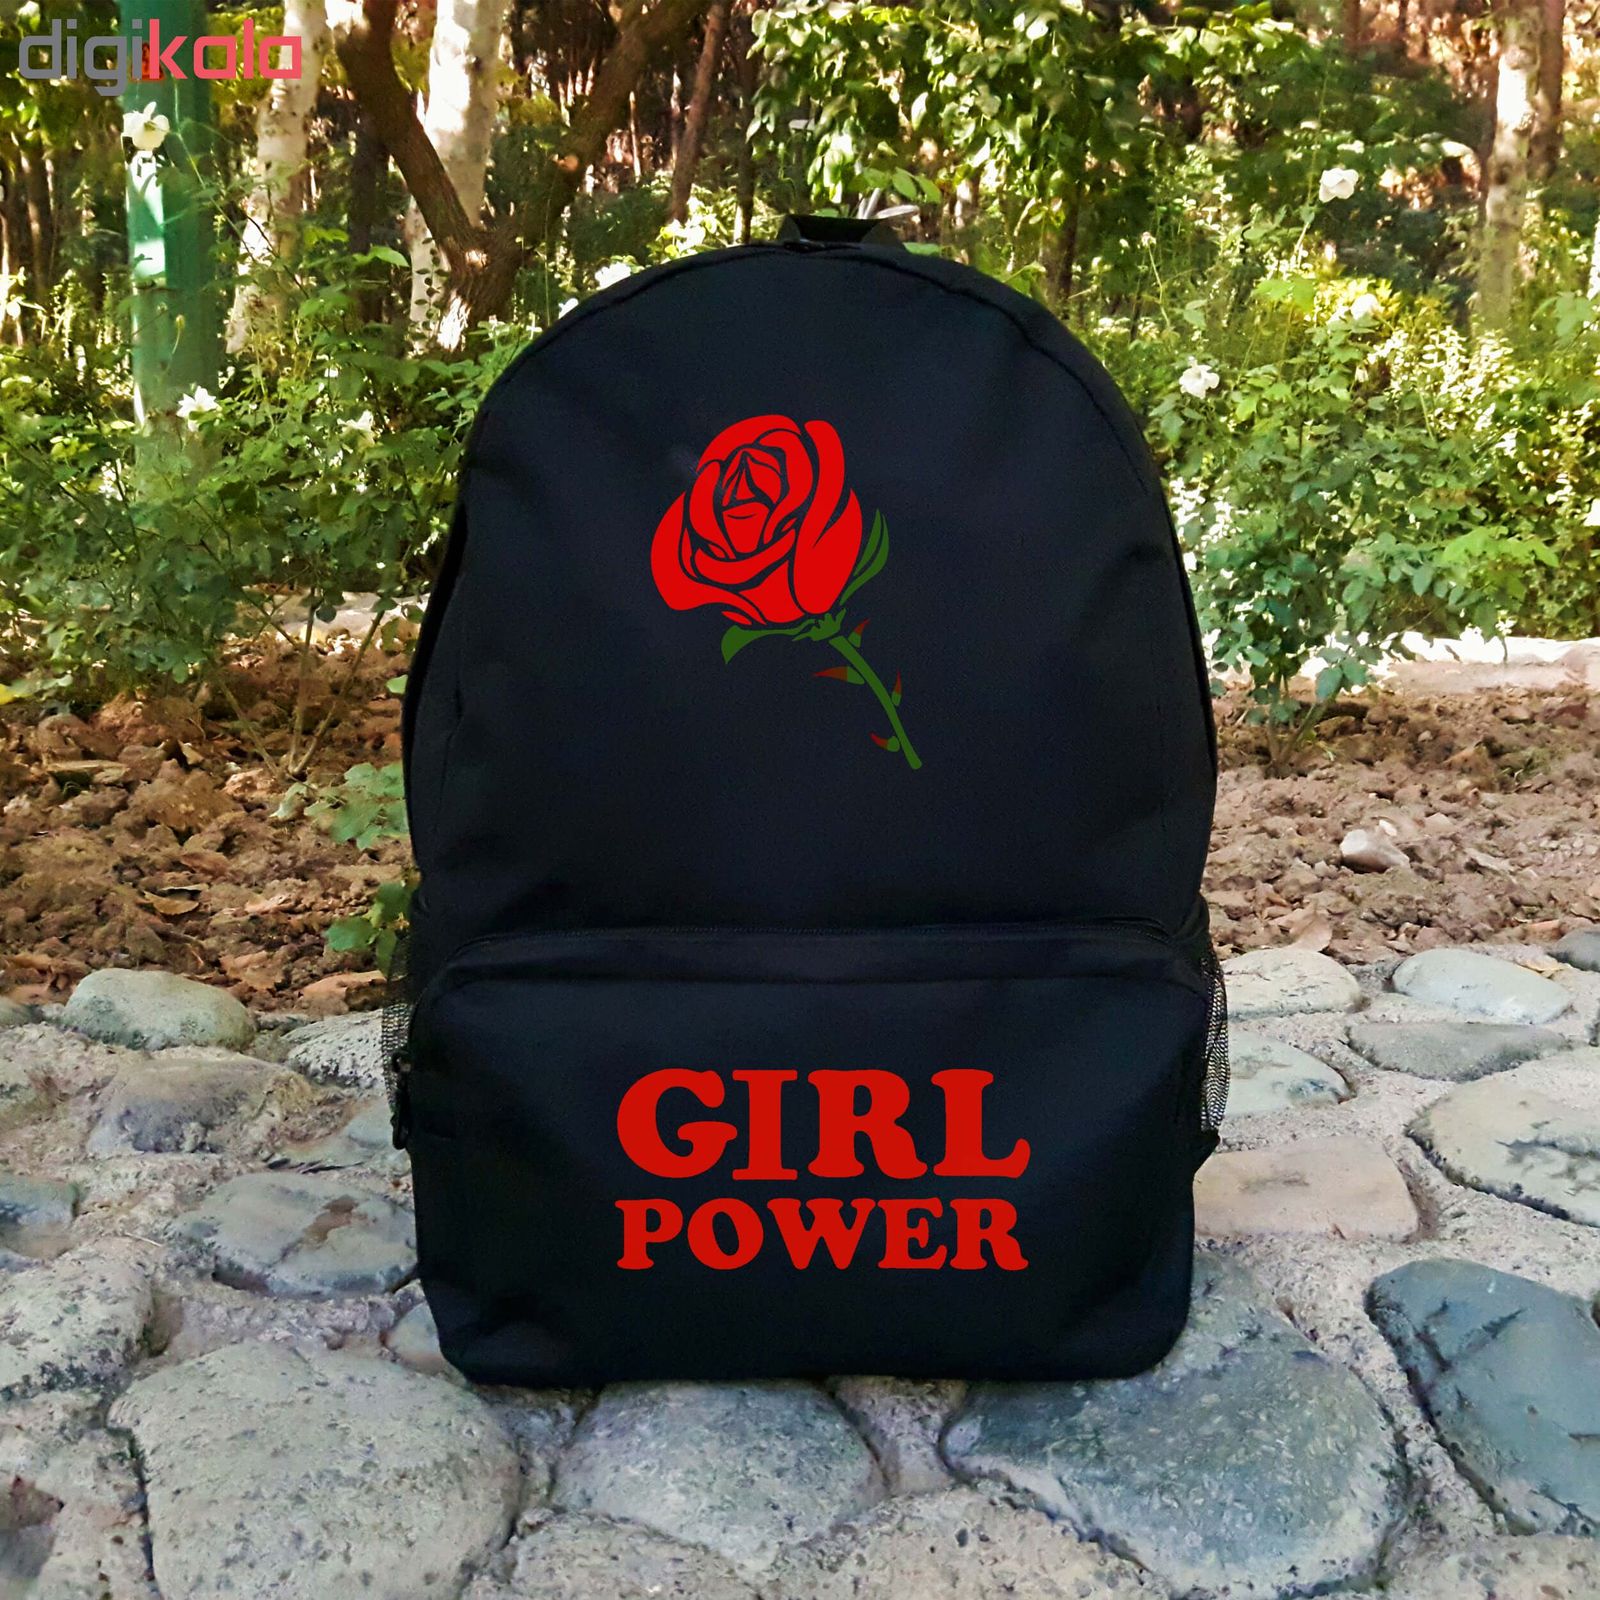  کوله پشتی طرح Girl power کد KP-18